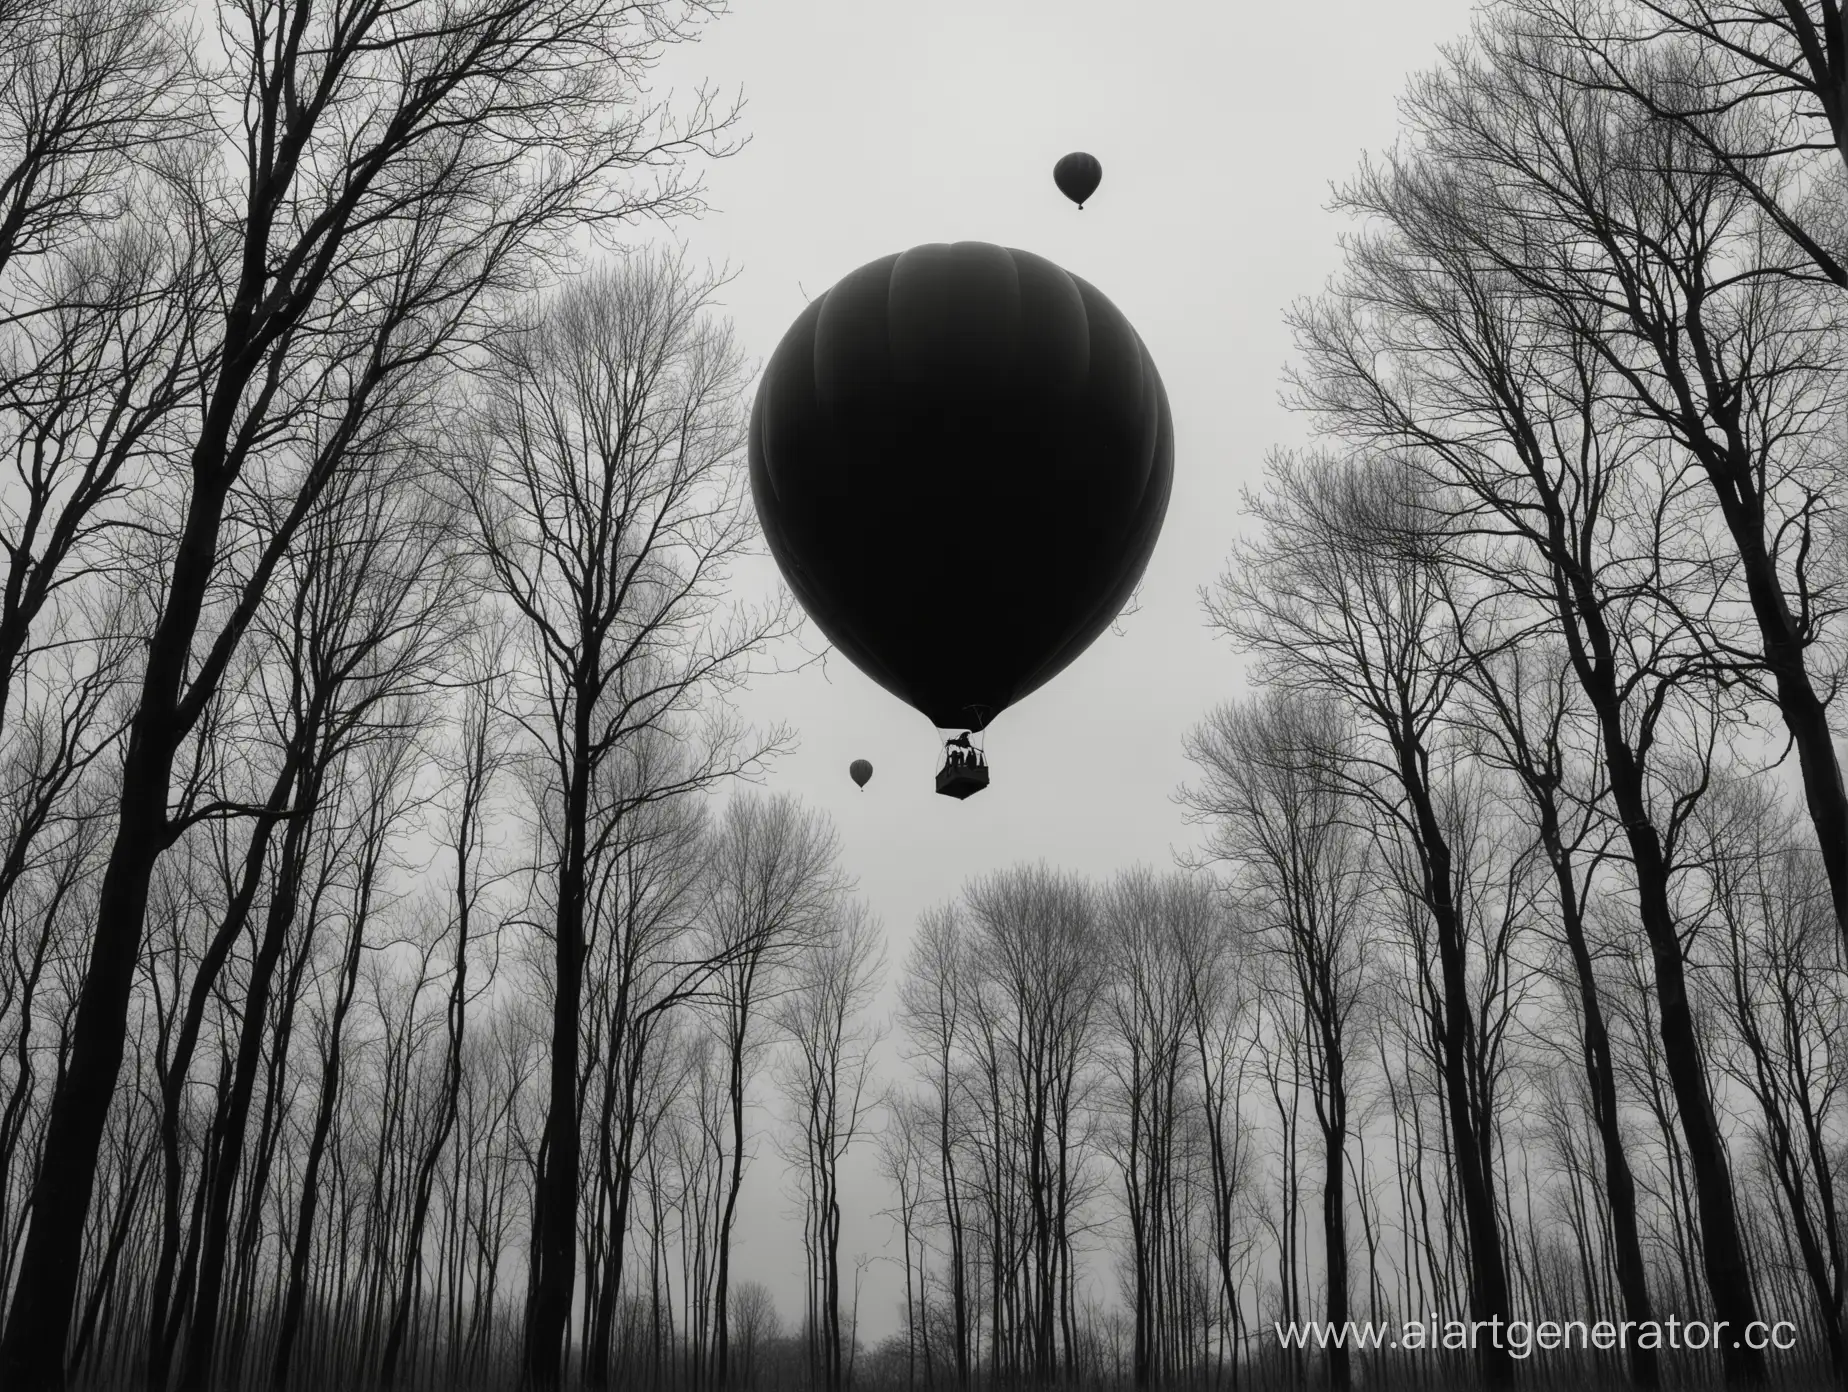 Black-Balloon-Flying-Amongst-Dark-Trees